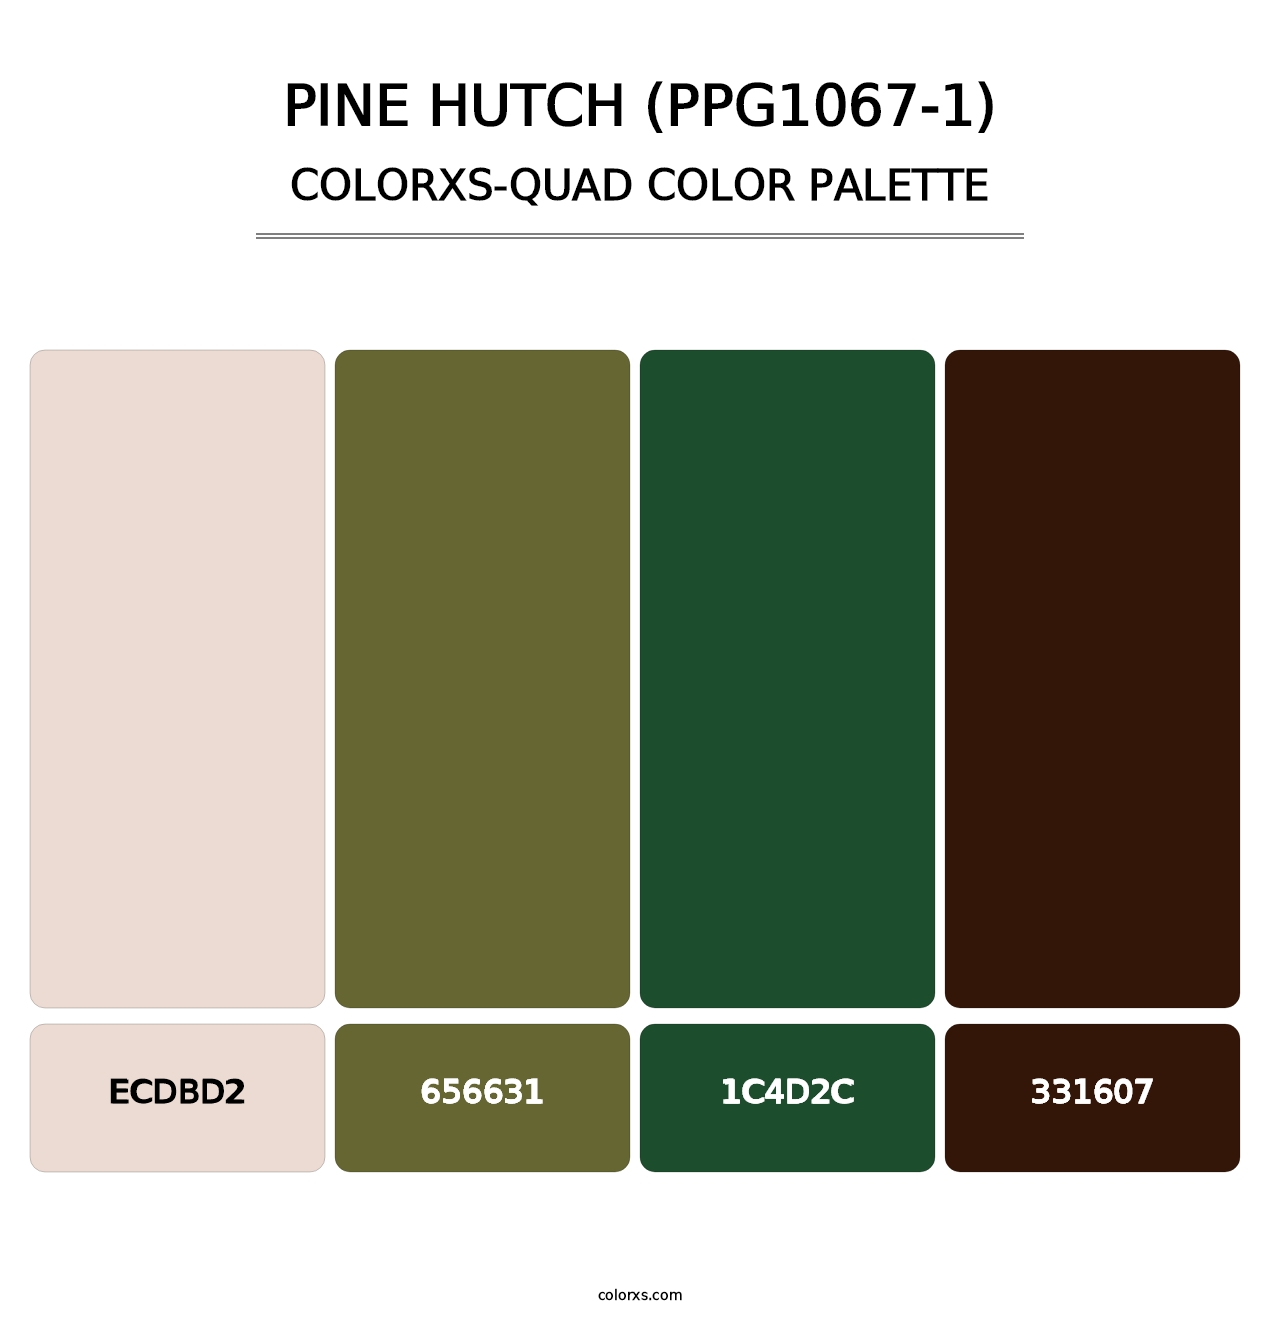 Pine Hutch (PPG1067-1) - Colorxs Quad Palette